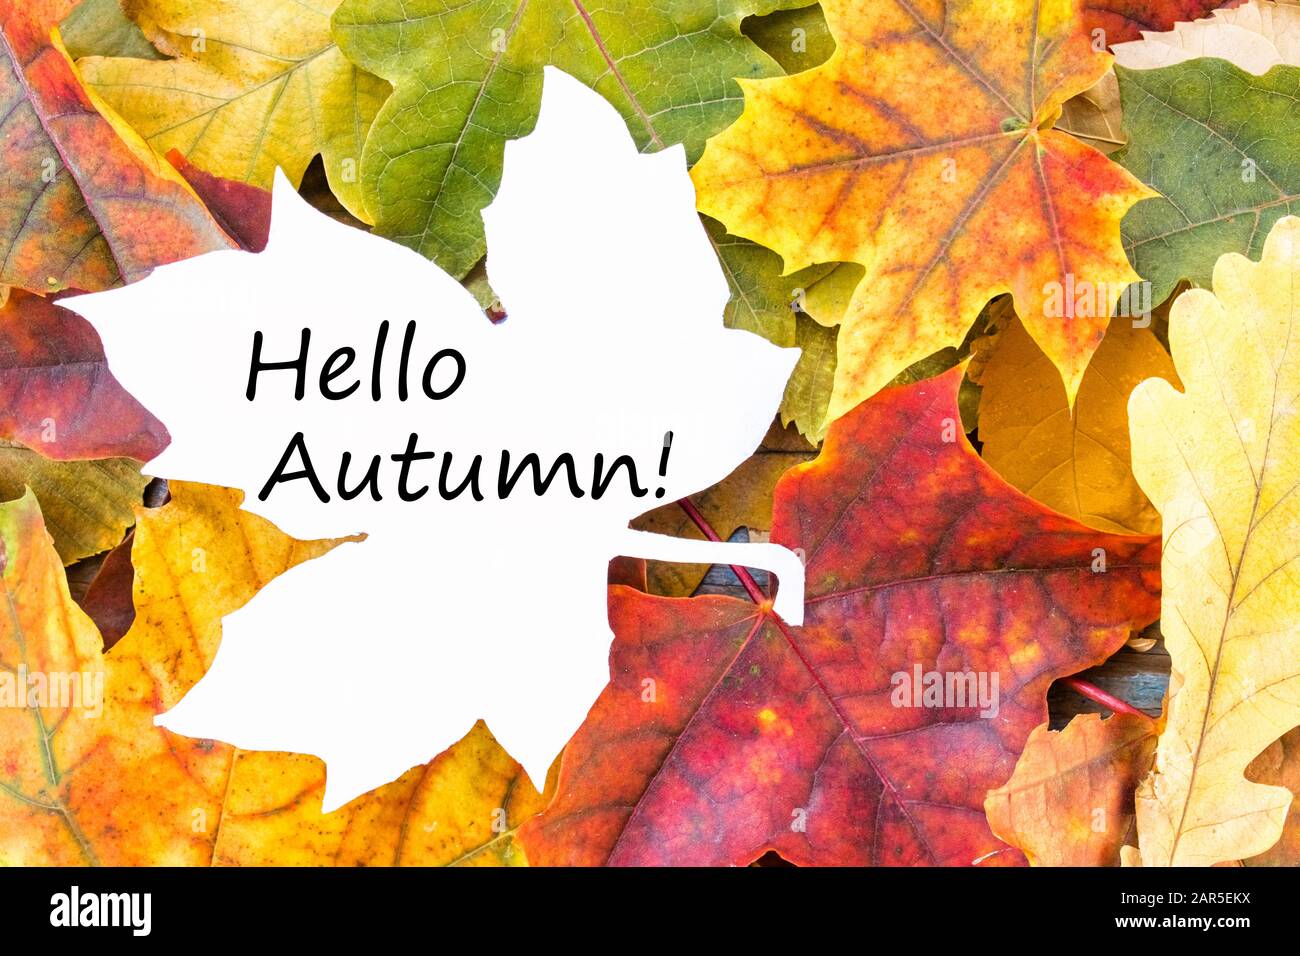 Tag mit den Worten Hallo Herbst auf einem weißen Blatt und bunten Herbstblättern. Hintergrund mit Herbstlaub. Platz für Beschriftung kopieren. Herbstlaub. Stockfoto